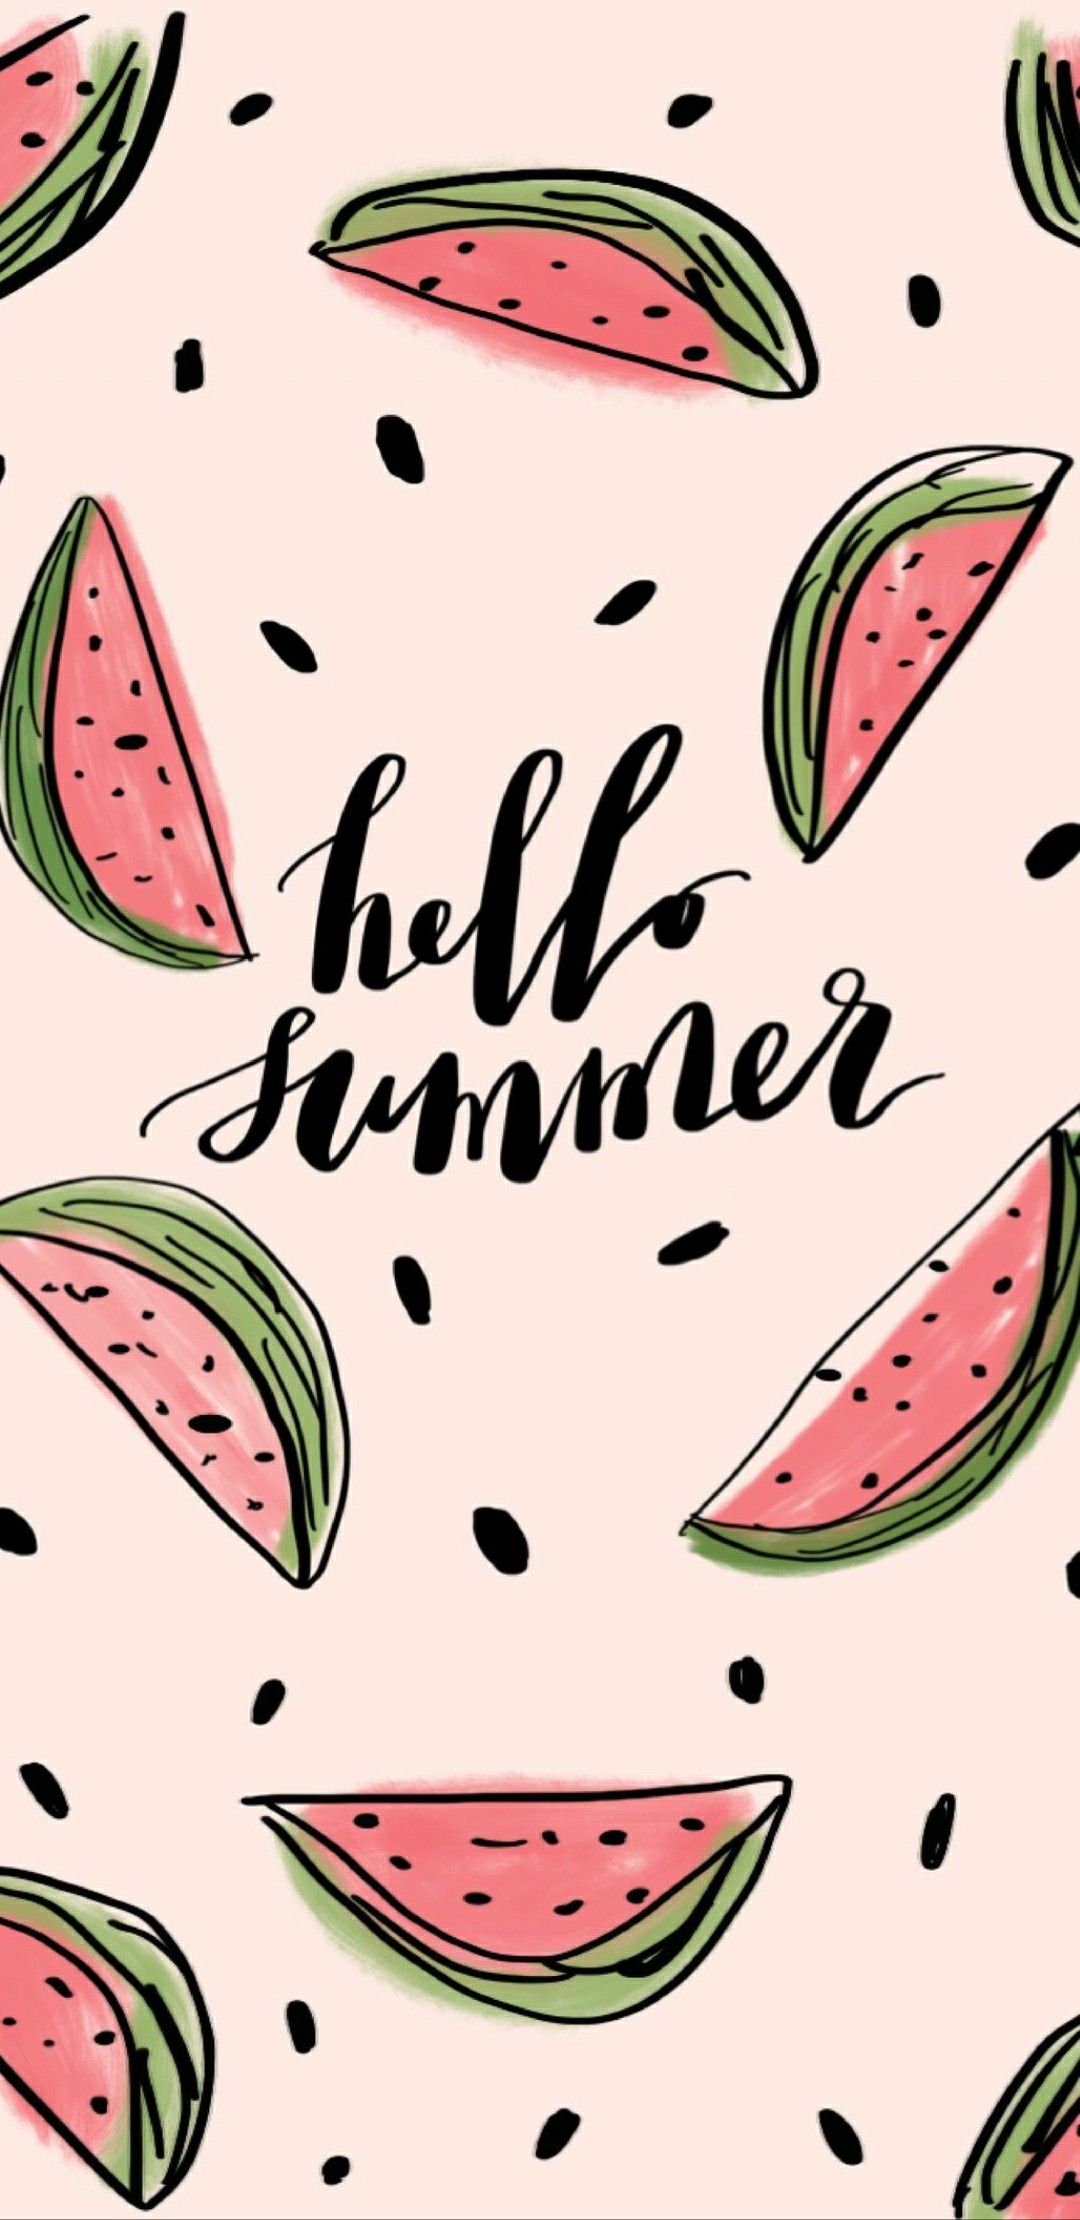 Watermelon bgs & etc. Wallpaper iphone summer, Cute summer wallpaper, Watermelon wallpaper